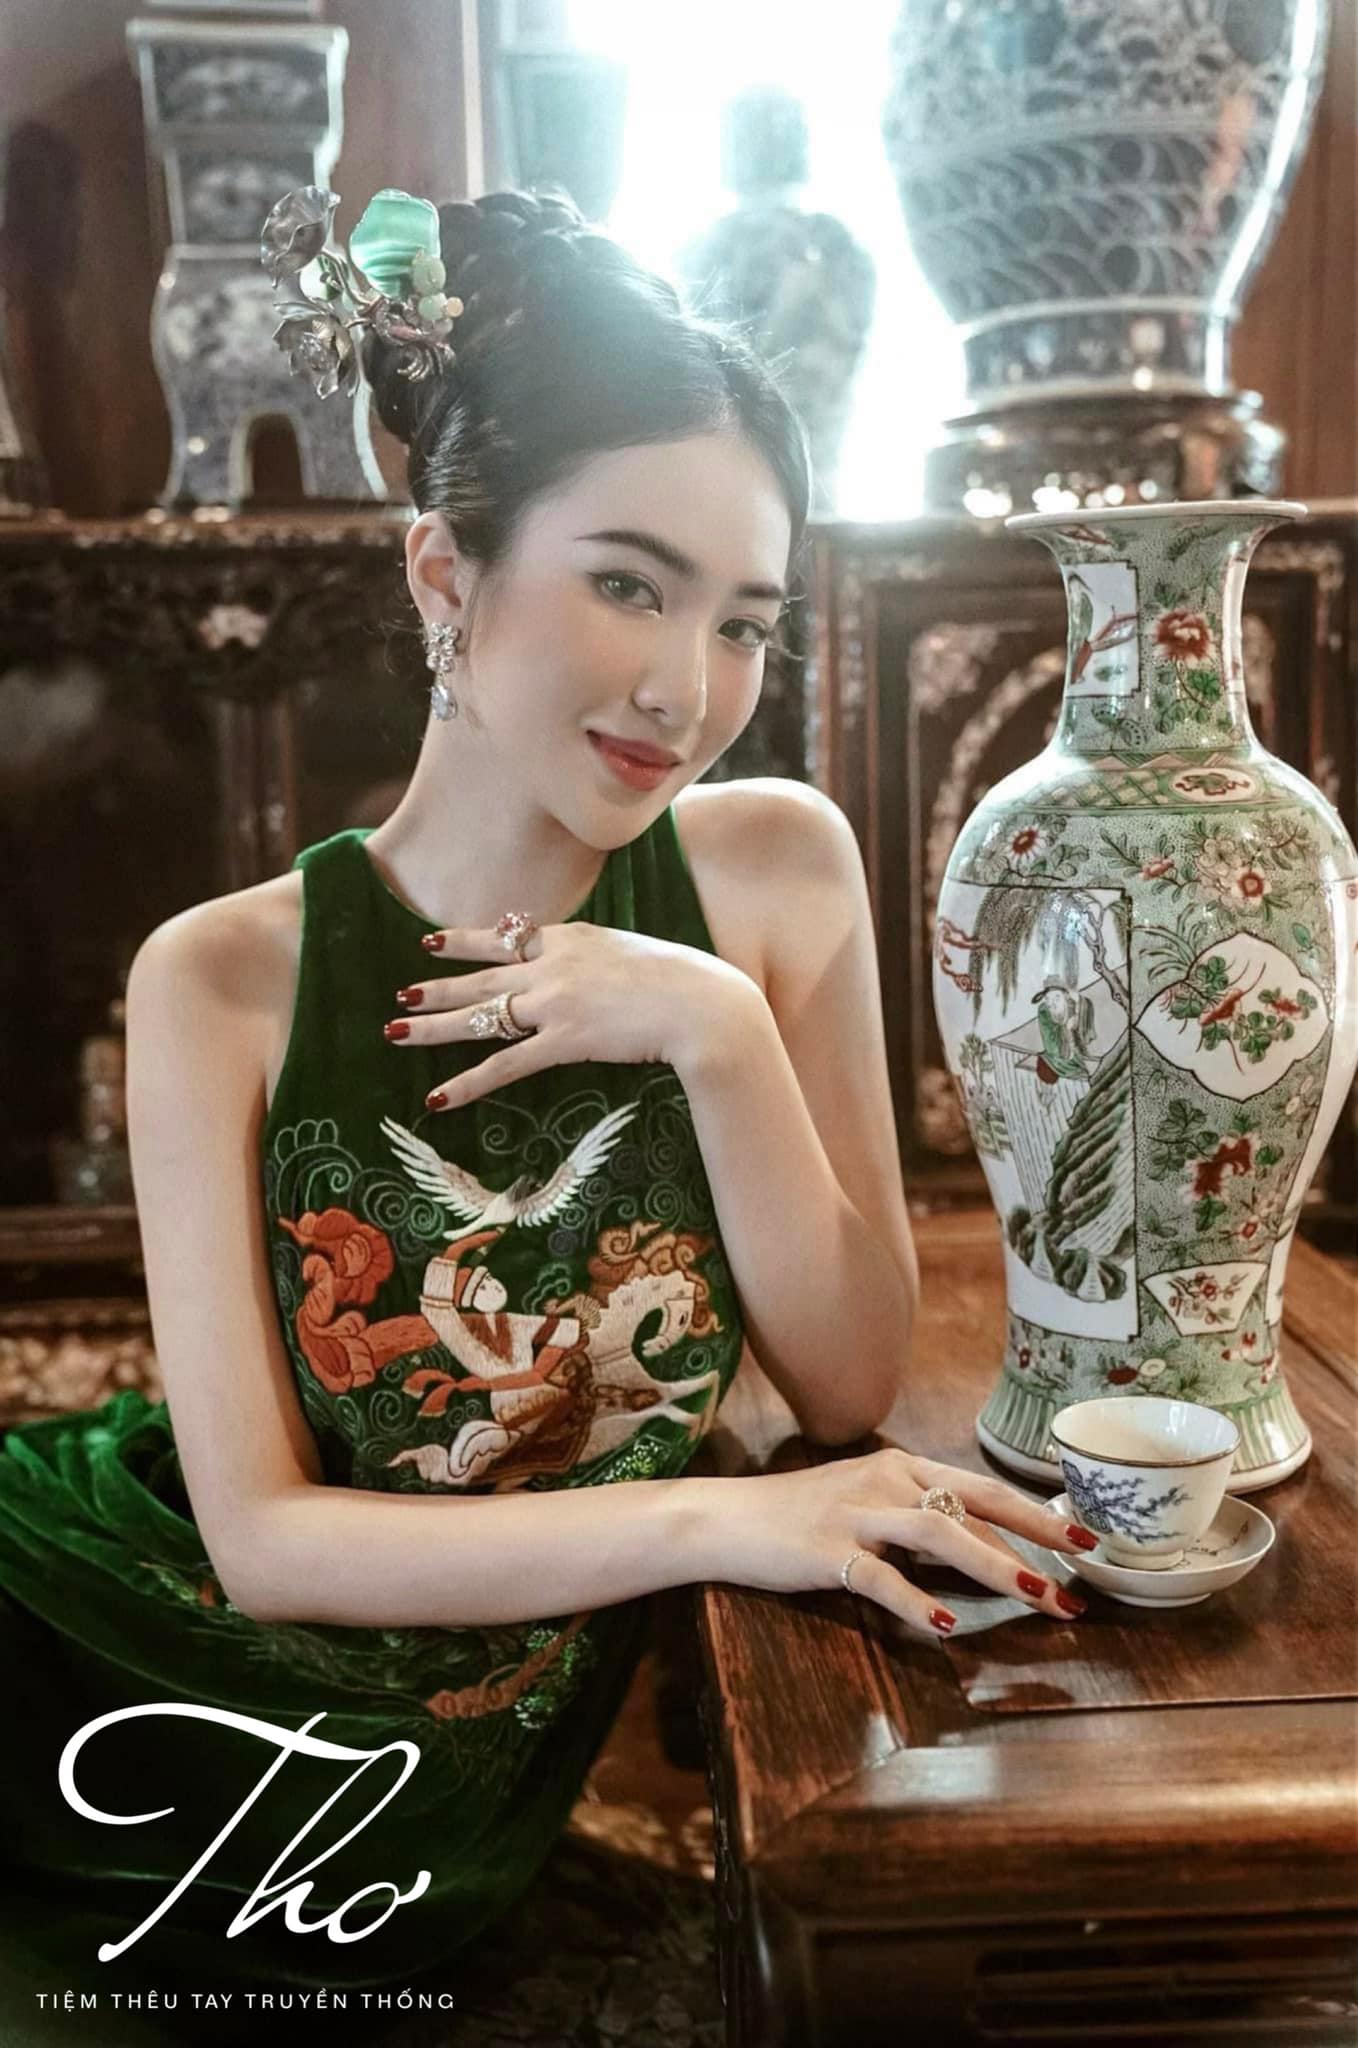 Đầm nhung the cao cấp tay xếp bèo điệu đà thêu tay bằng chỉ tơ đẹp như một  bức tranh, tạo vẻ sang trọng... | Instagram